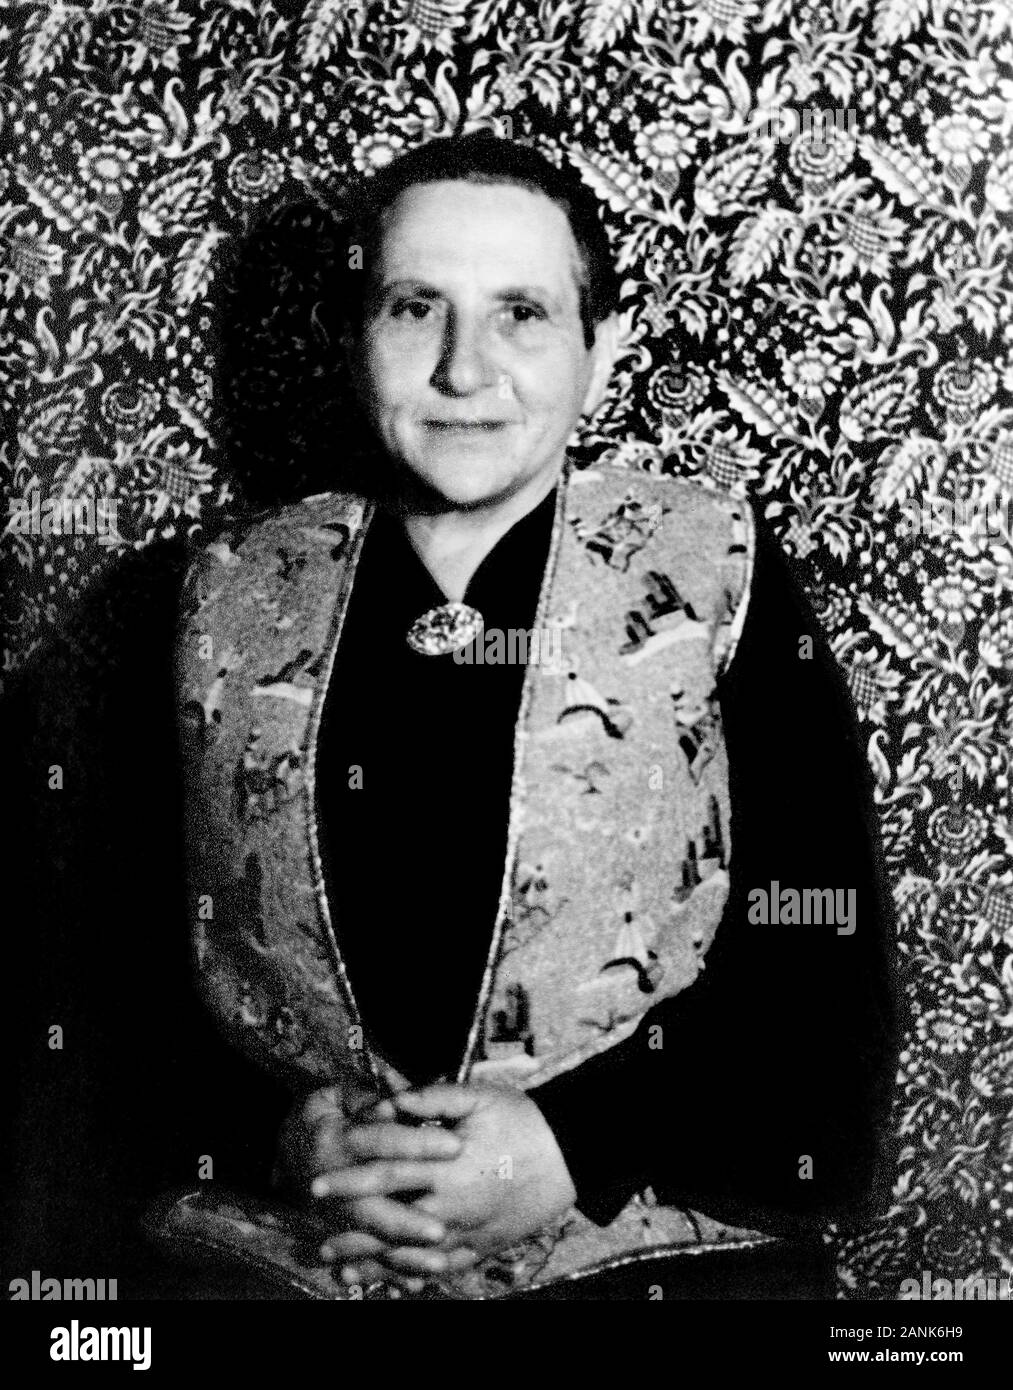 Half-Length Ritratto di Gertrude Stein (1874-1946), American figura letteraria, fotografia di Carl Van Vechten, Novembre 1934 Foto Stock